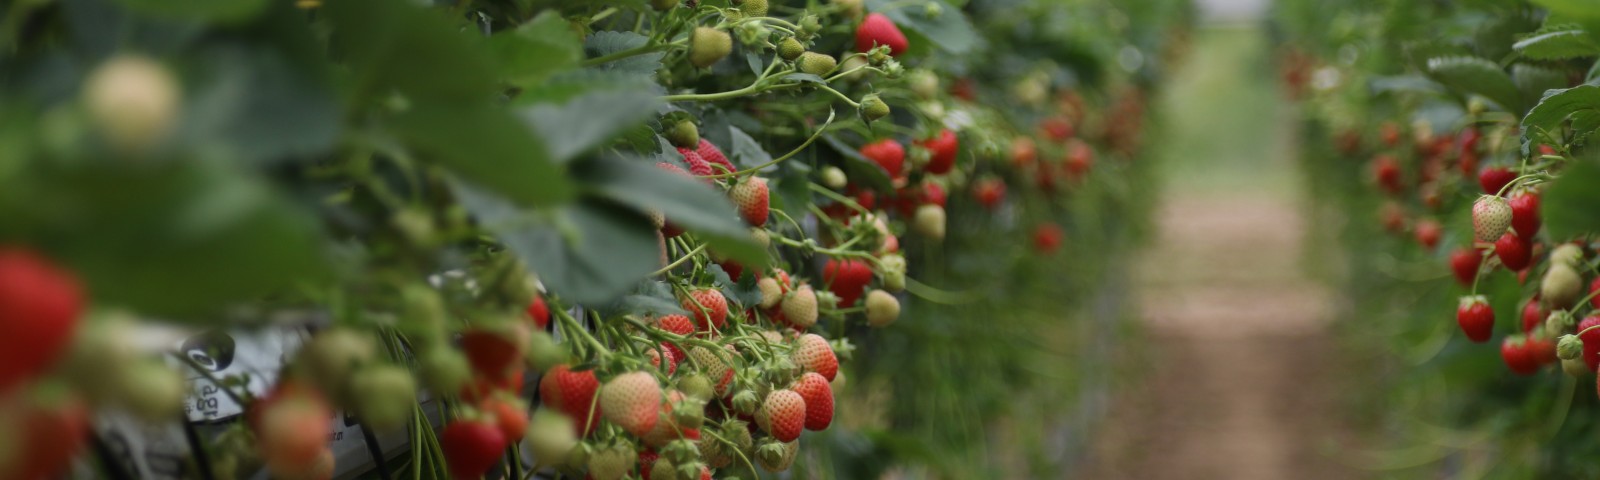 Strawberry breeding at NIAB EMR